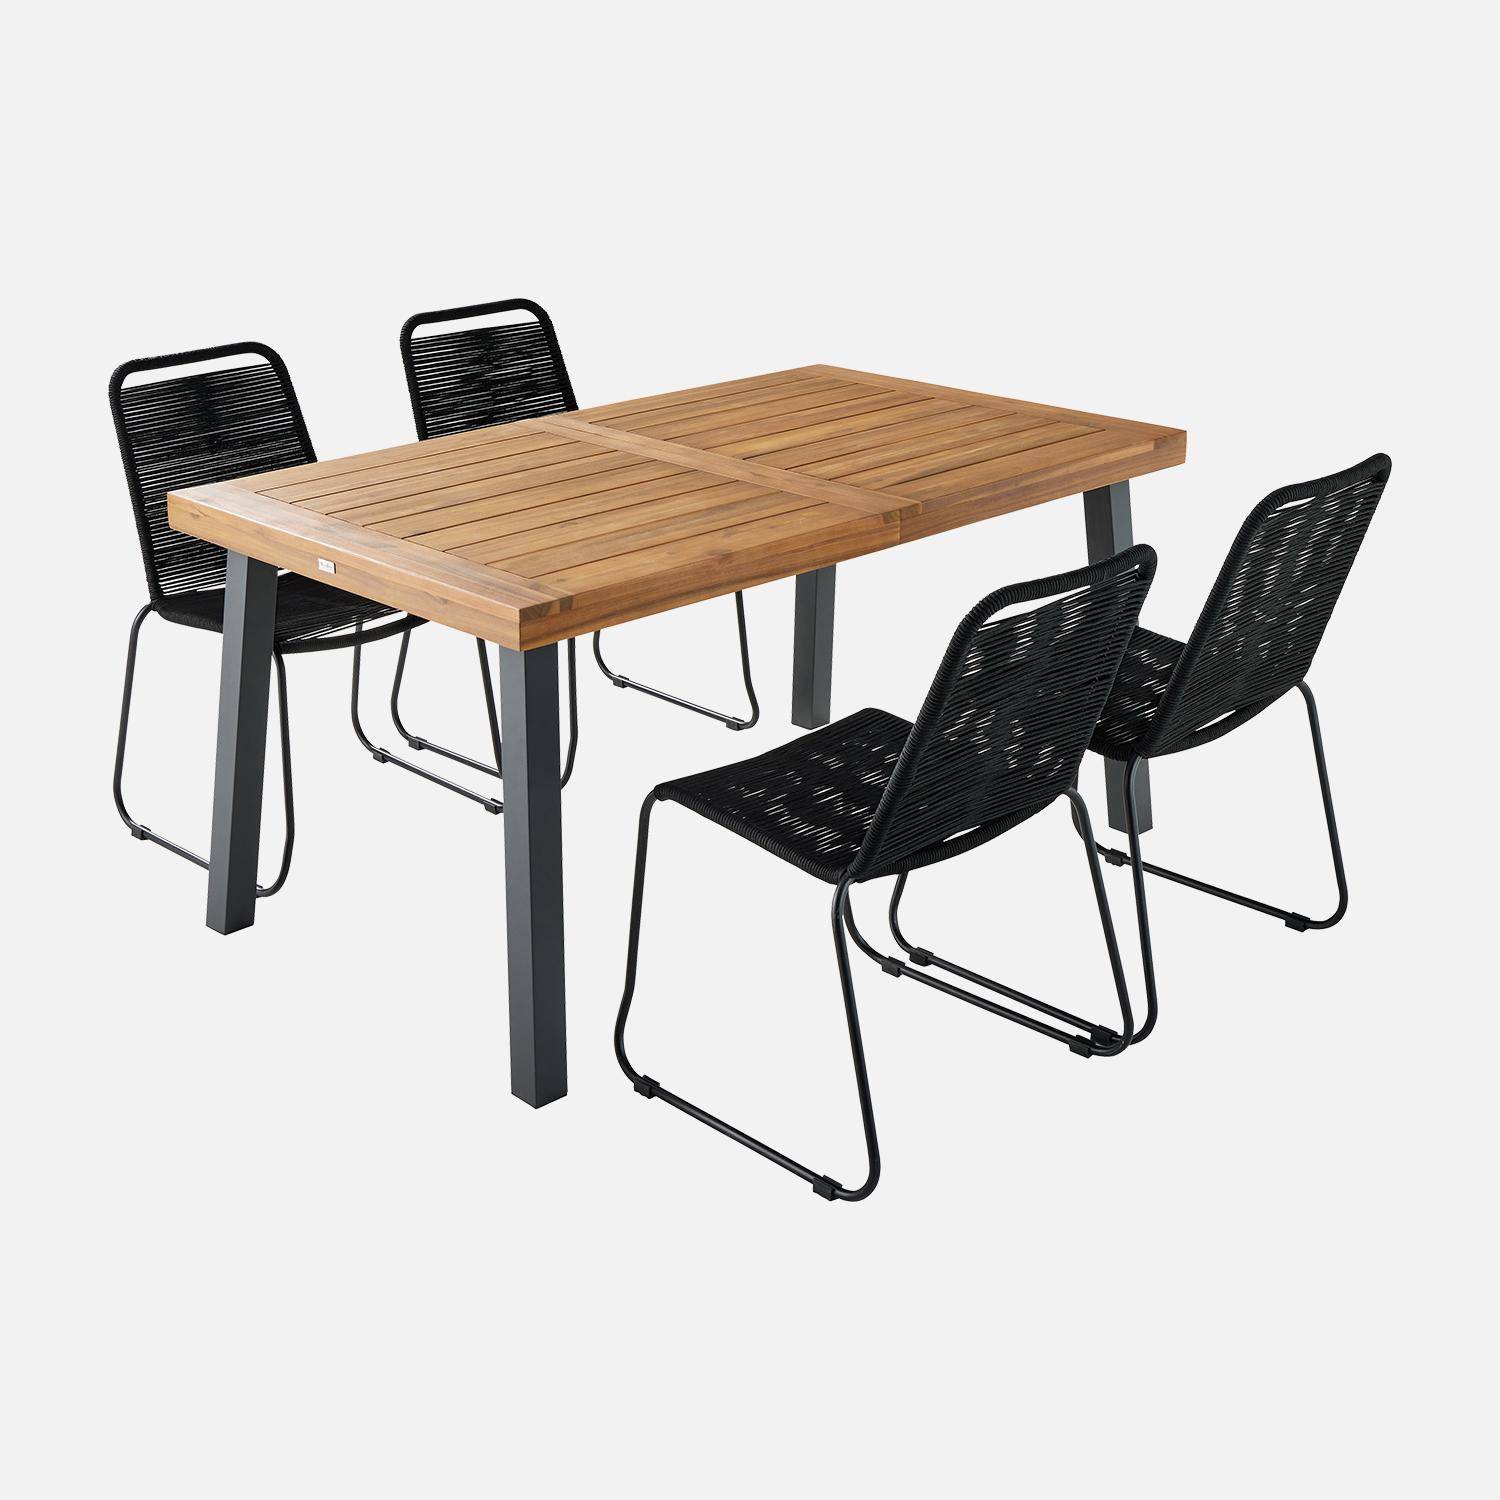 Table intérieur / extérieur Santana en bois et métal, 150cm + 4 chaises en corde BRASILIA noires, empilables Photo3